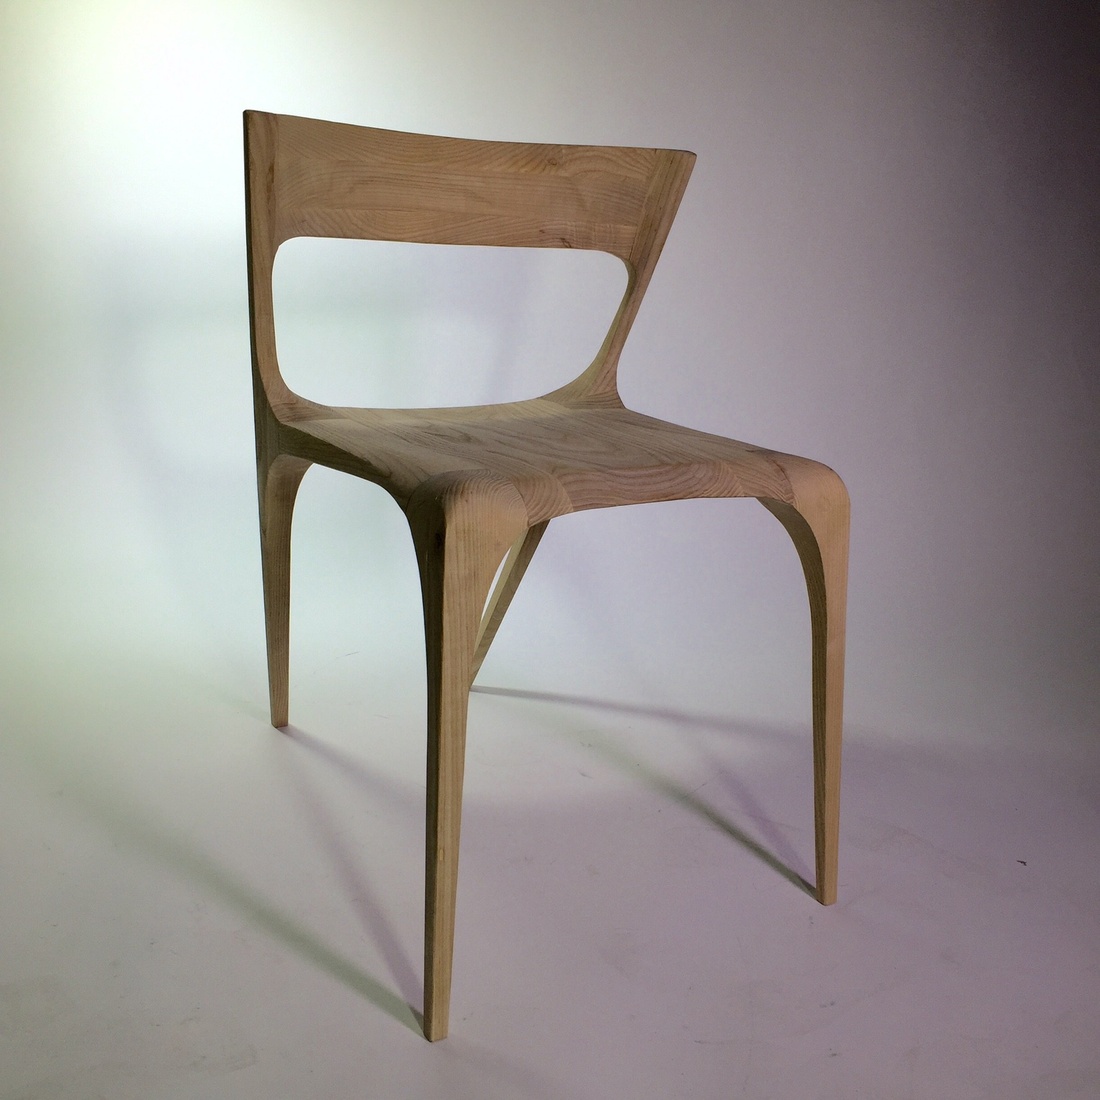 Chair by Hugo Fenaux